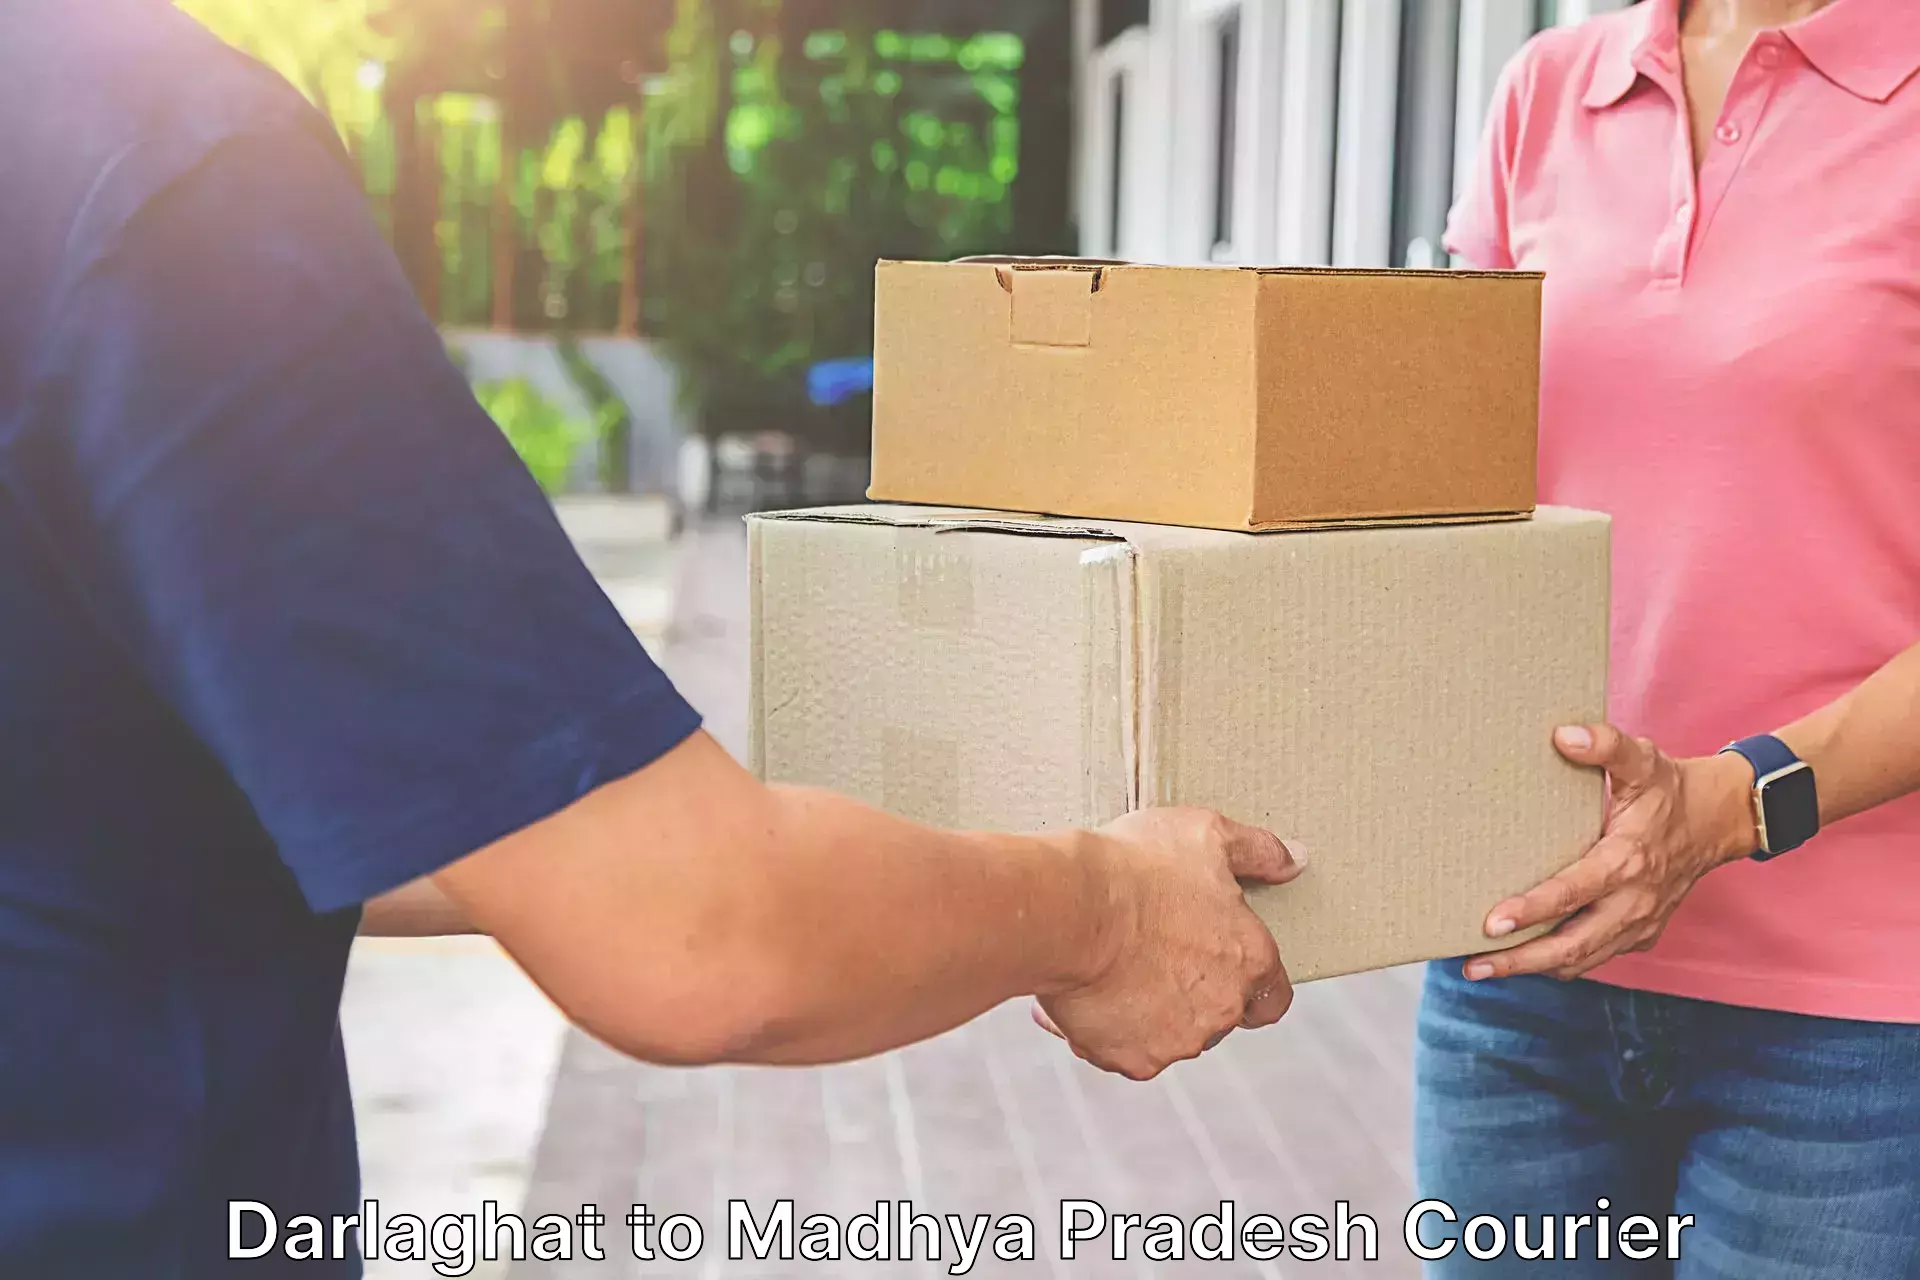 Package delivery network Darlaghat to Vijayraghavgarh